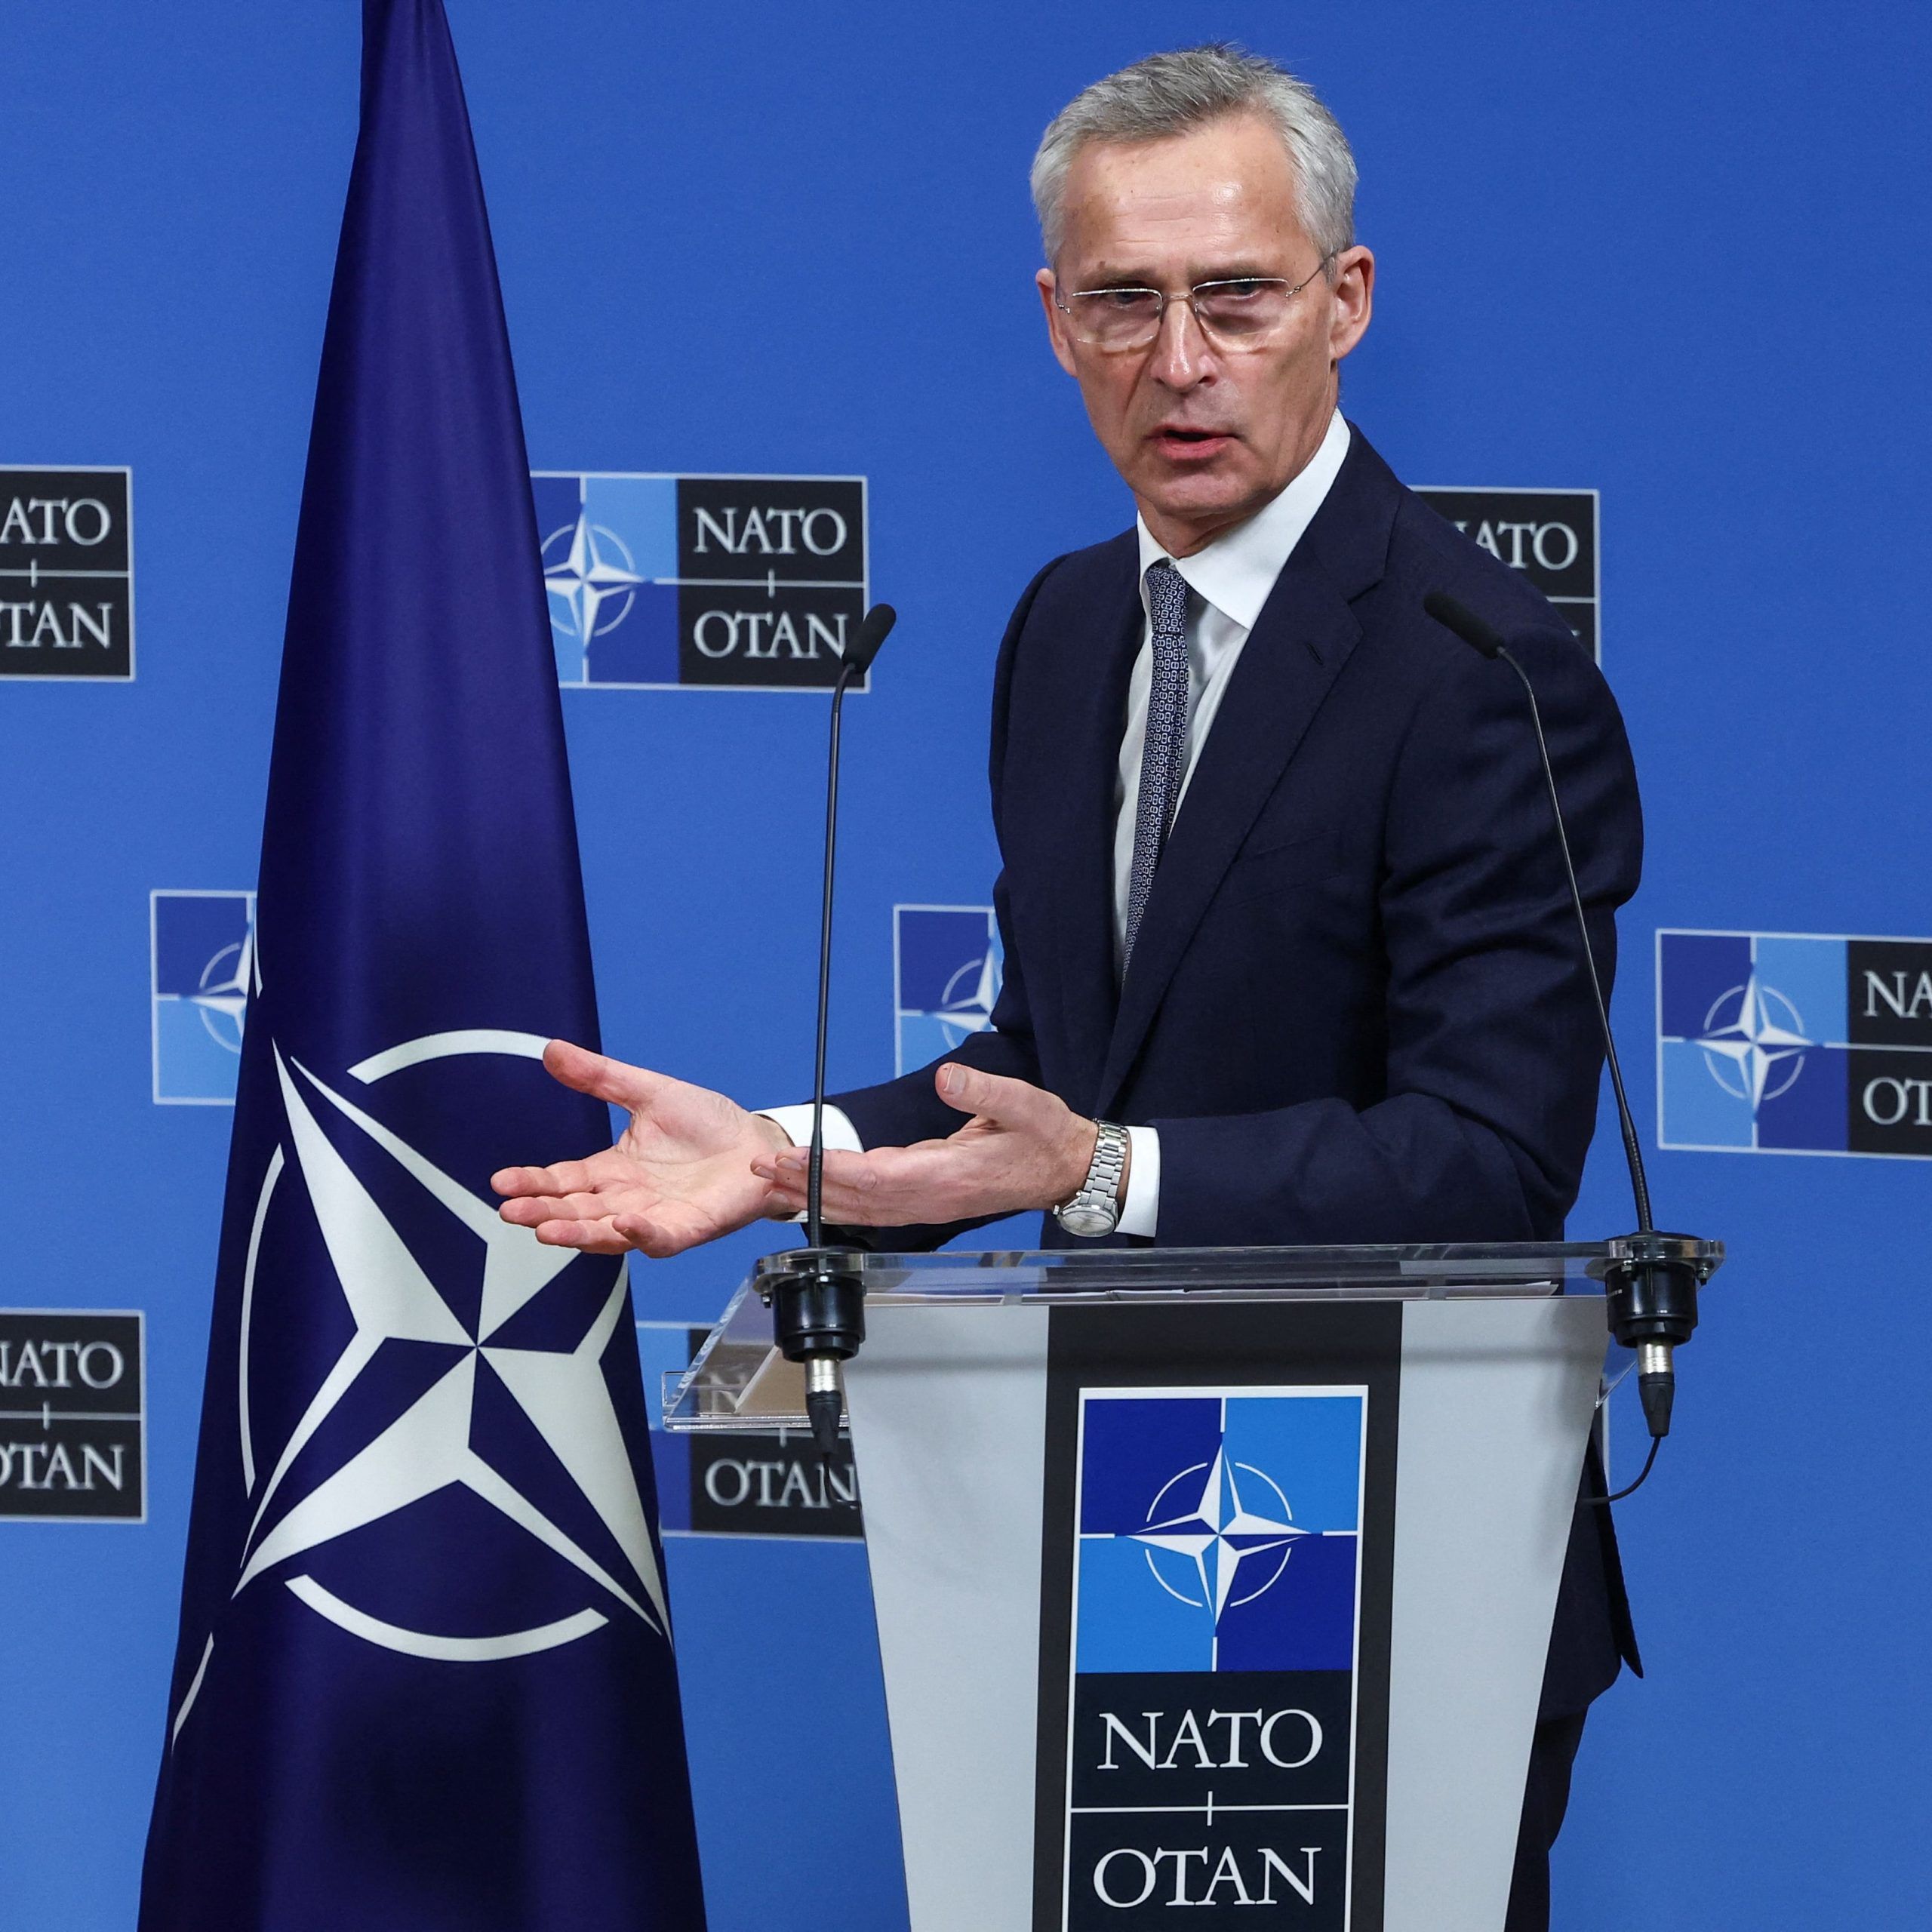 La OTAN le exigió al régimen de China cesar su apoyo a Rusia para preservar las relaciones con Occidente